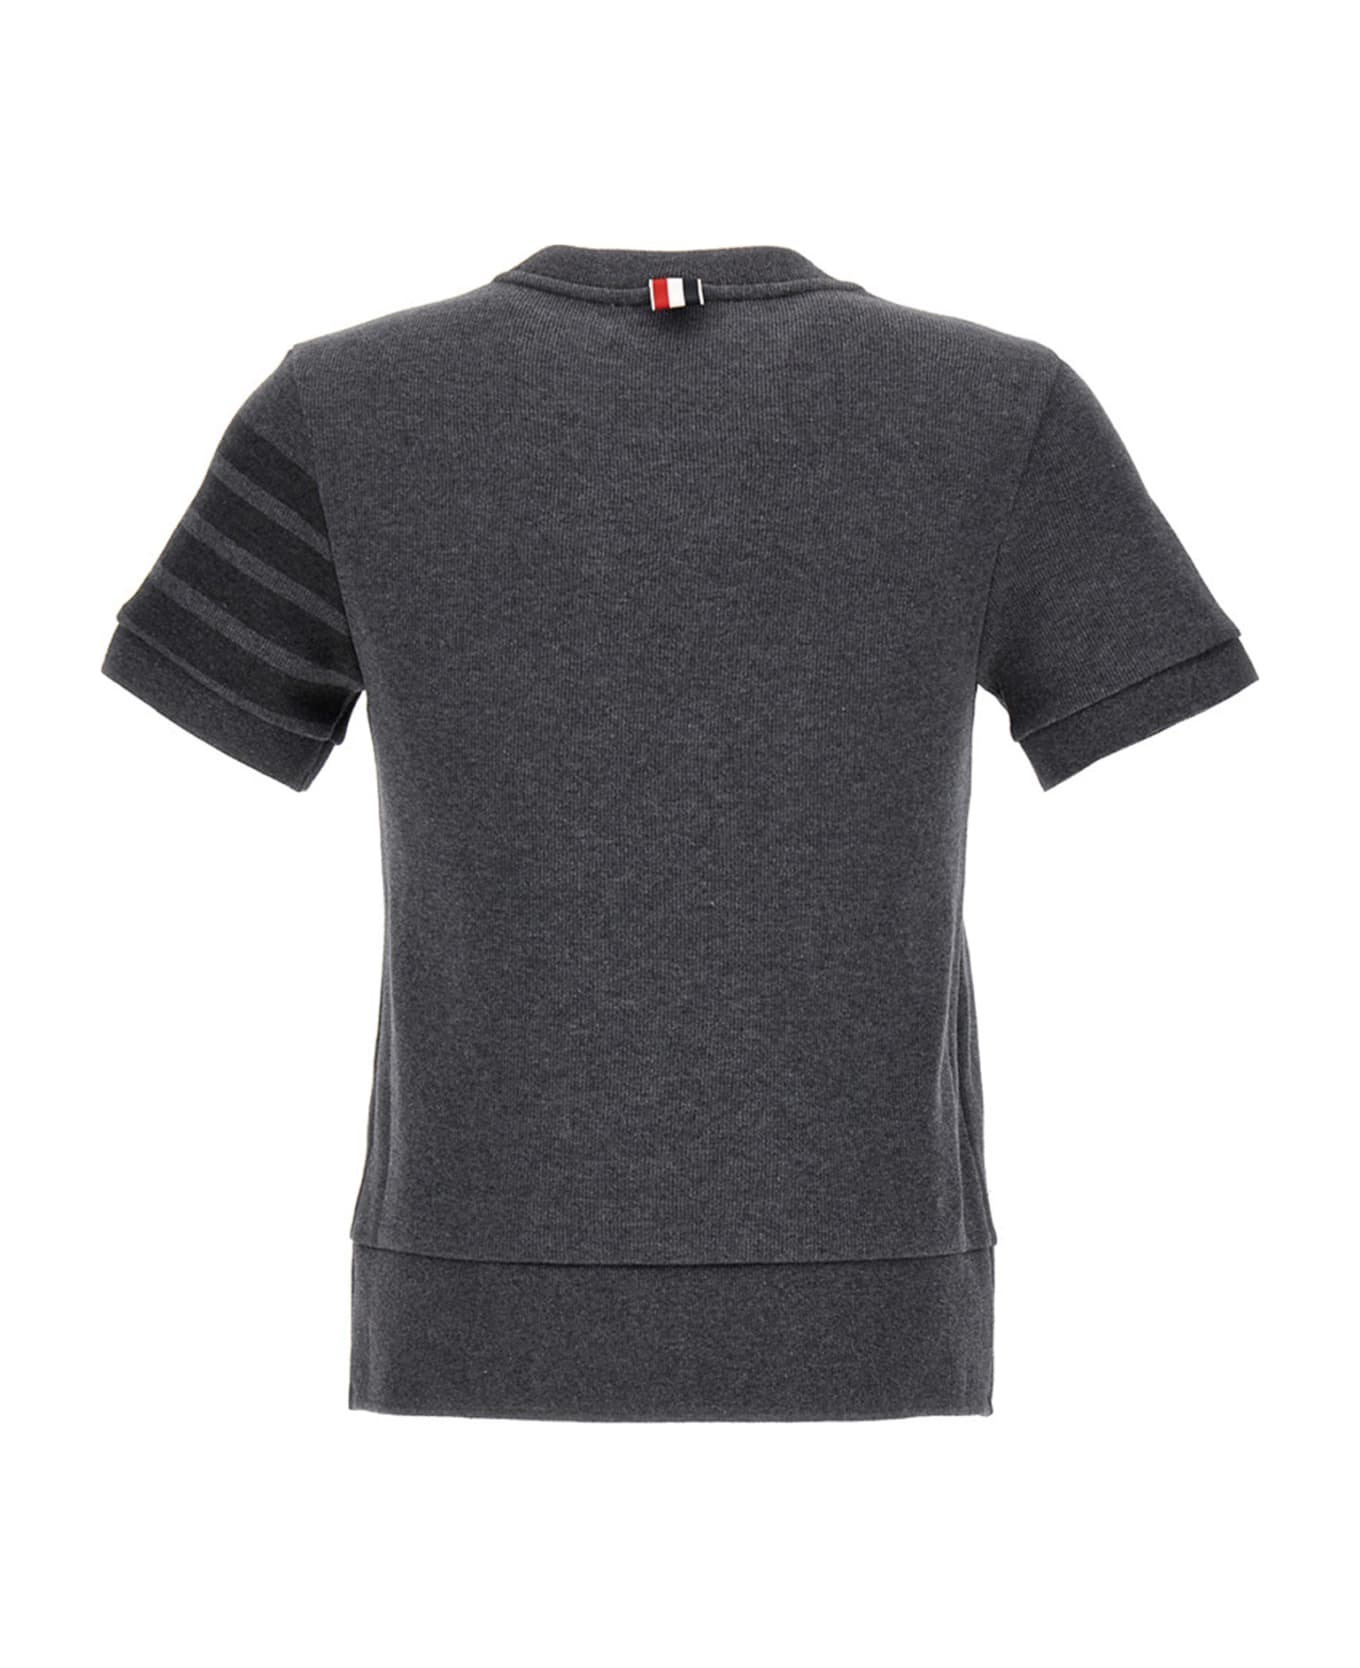 Thom Browne Short Sleeve Sweatshirt - Grey